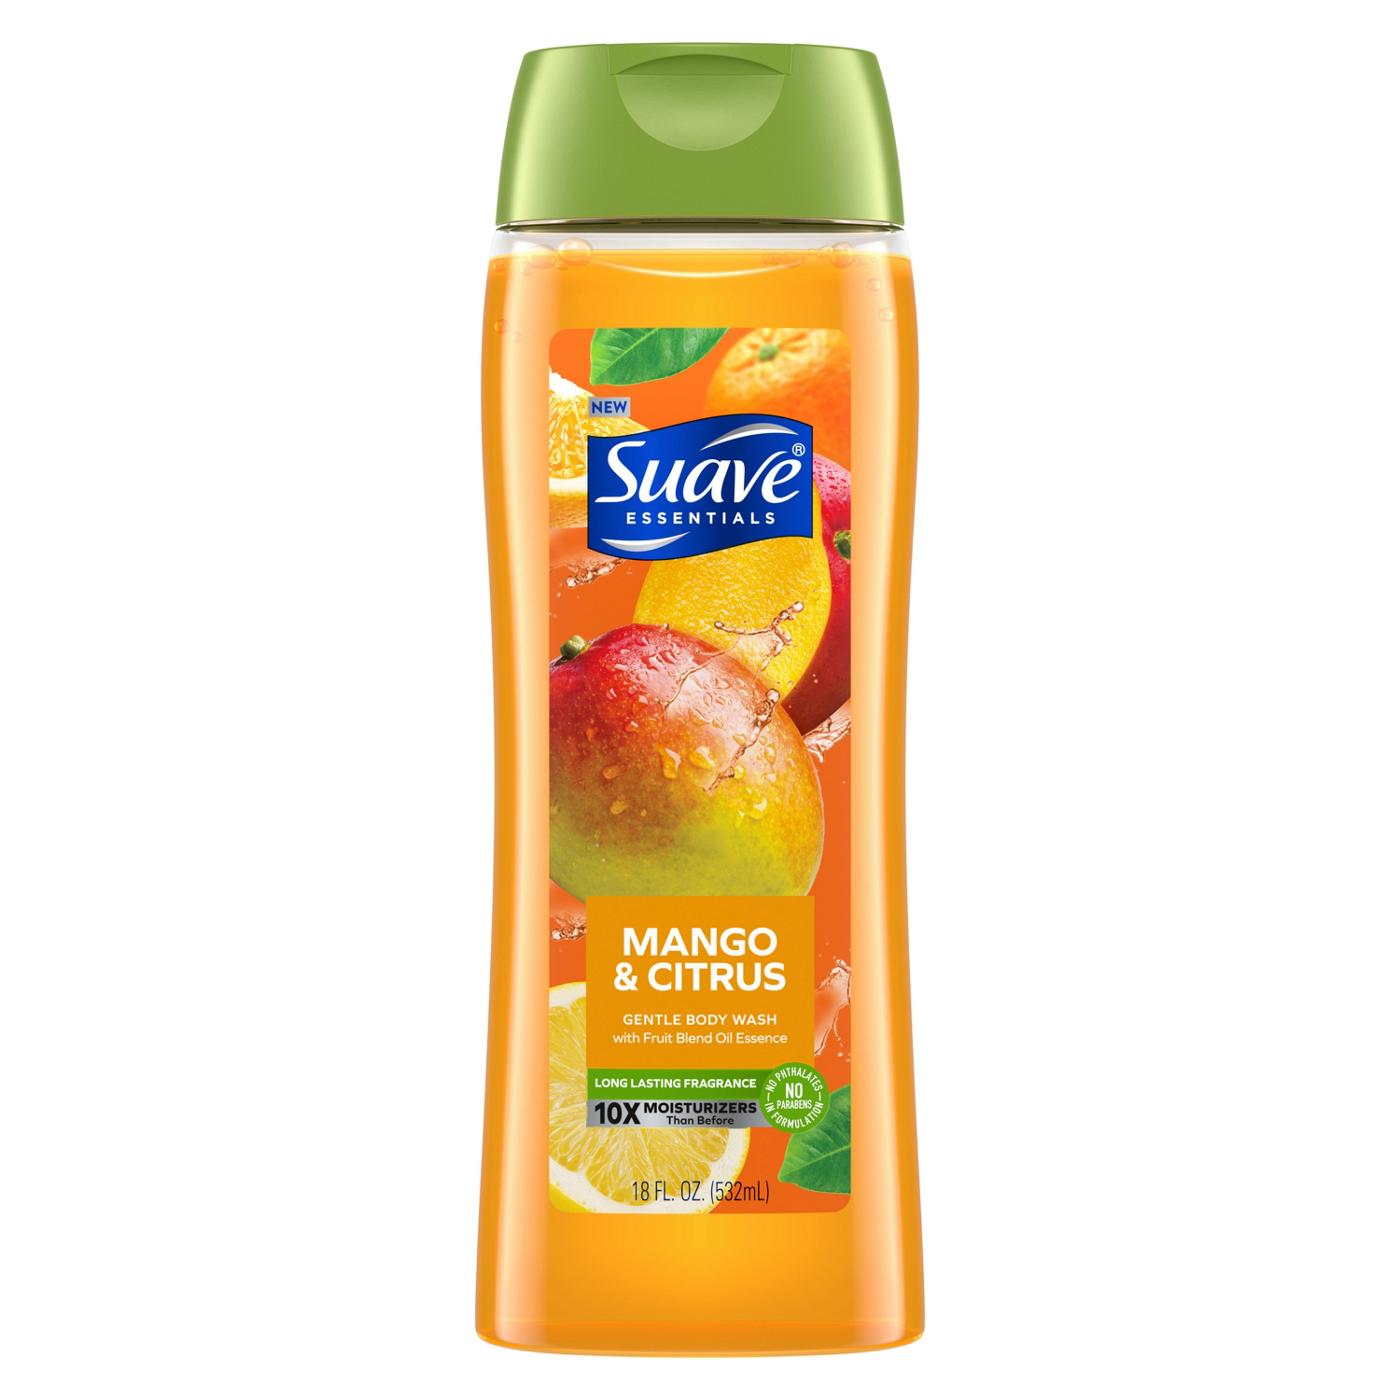 Suave Essentials Gentle Body Wash - Mango & Citrus; image 1 of 7